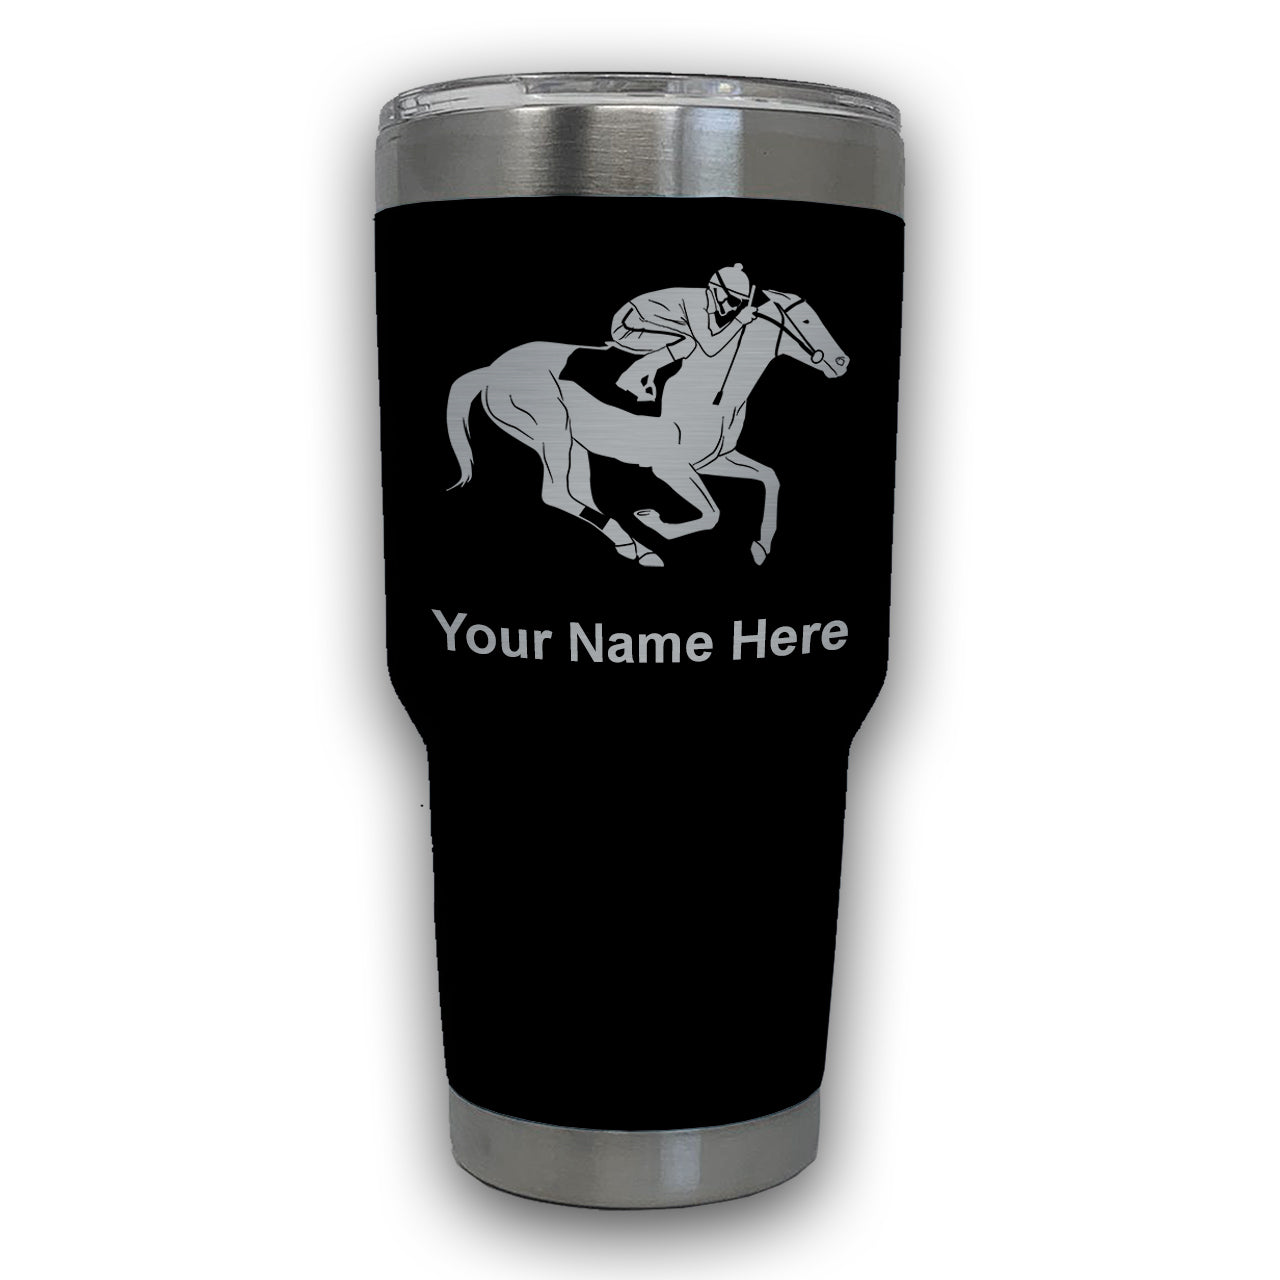 LaserGram 30oz Tumbler Mug, Horse Racing, Personalized Engraving Included